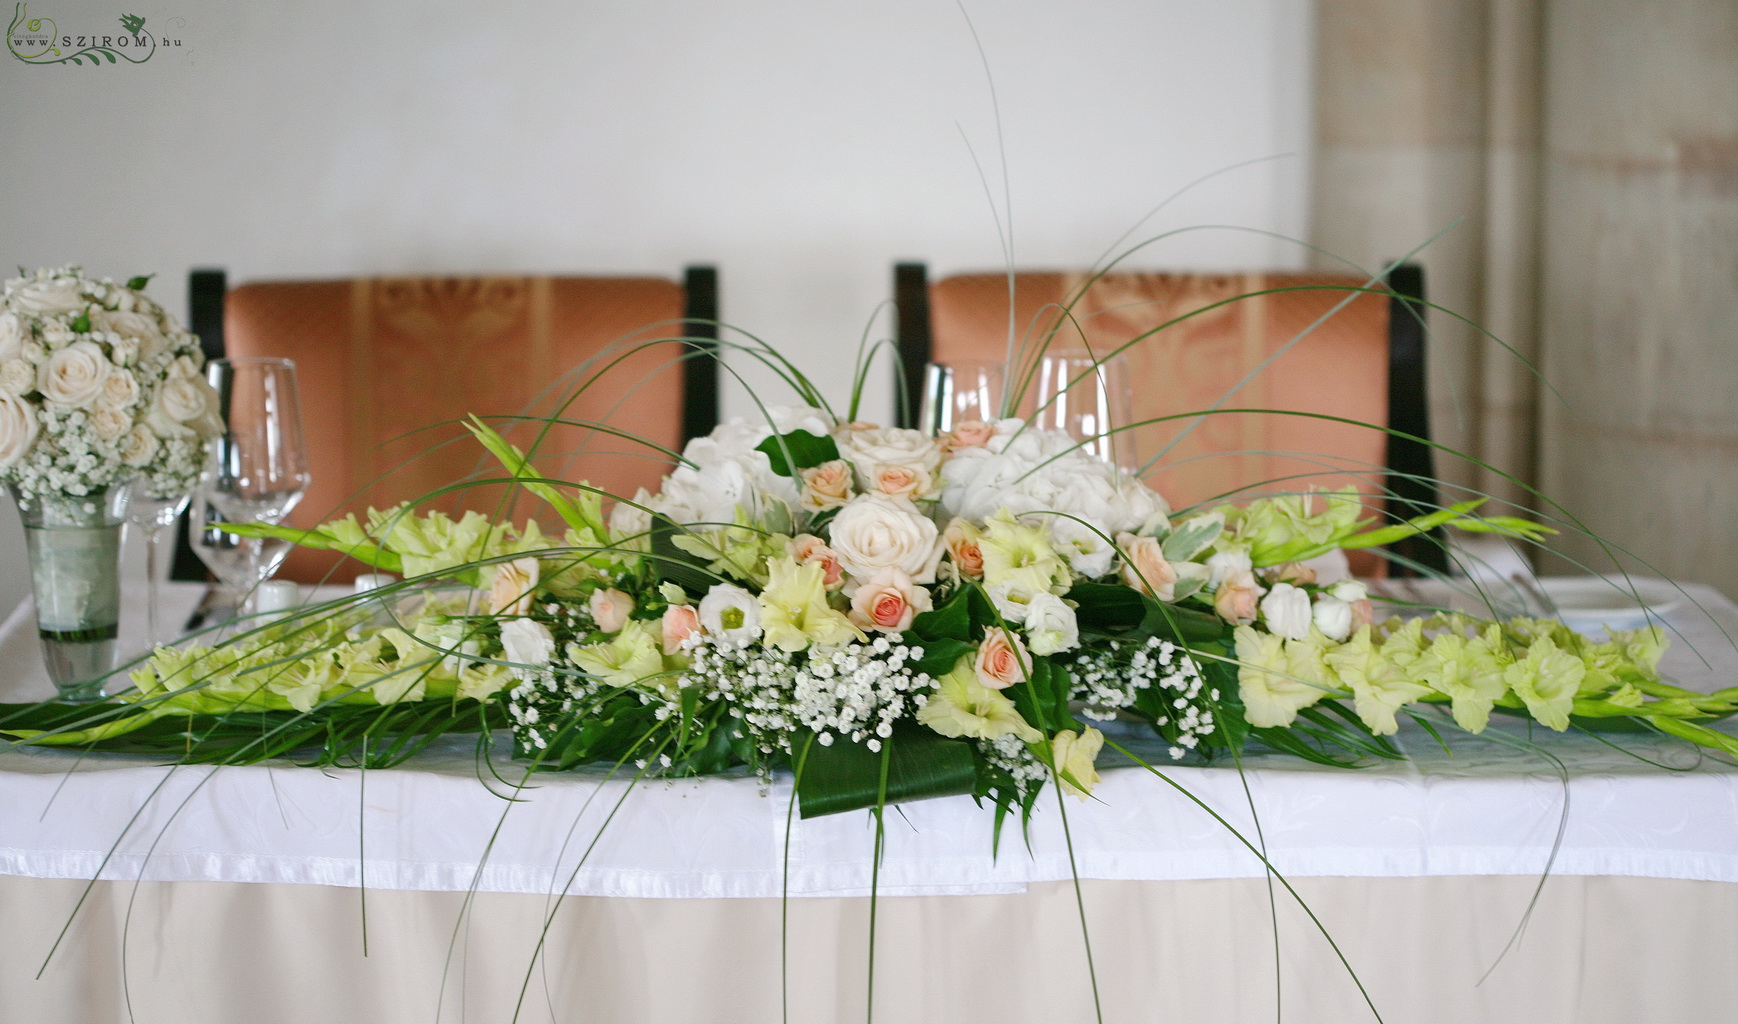 Virágküldés Budapest - főasztaldísz Halászbástya (rózsa, kardvirág, bokros rózsa, liziantusz, hortenzia, rezgő, fehér, barack, zöld), esküvő